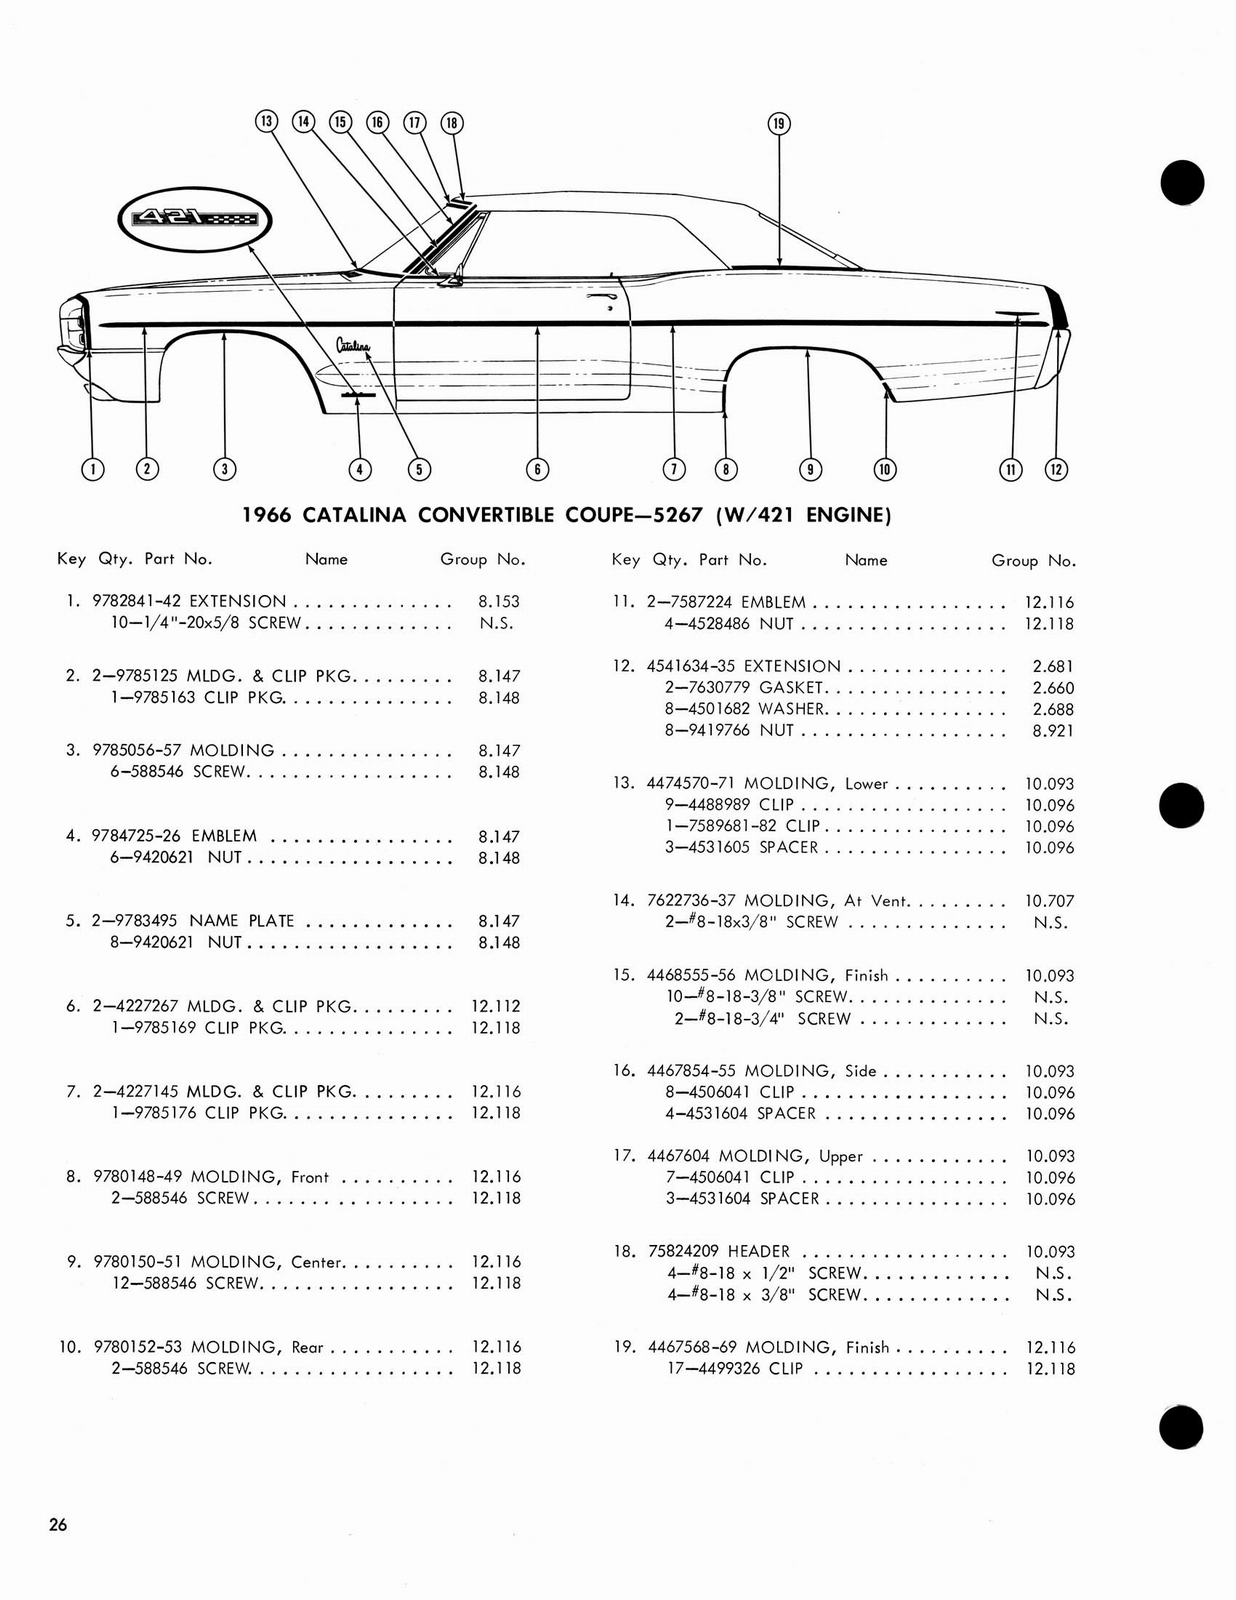 n_1966 Pontiac Molding and Clip Catalog-26.jpg